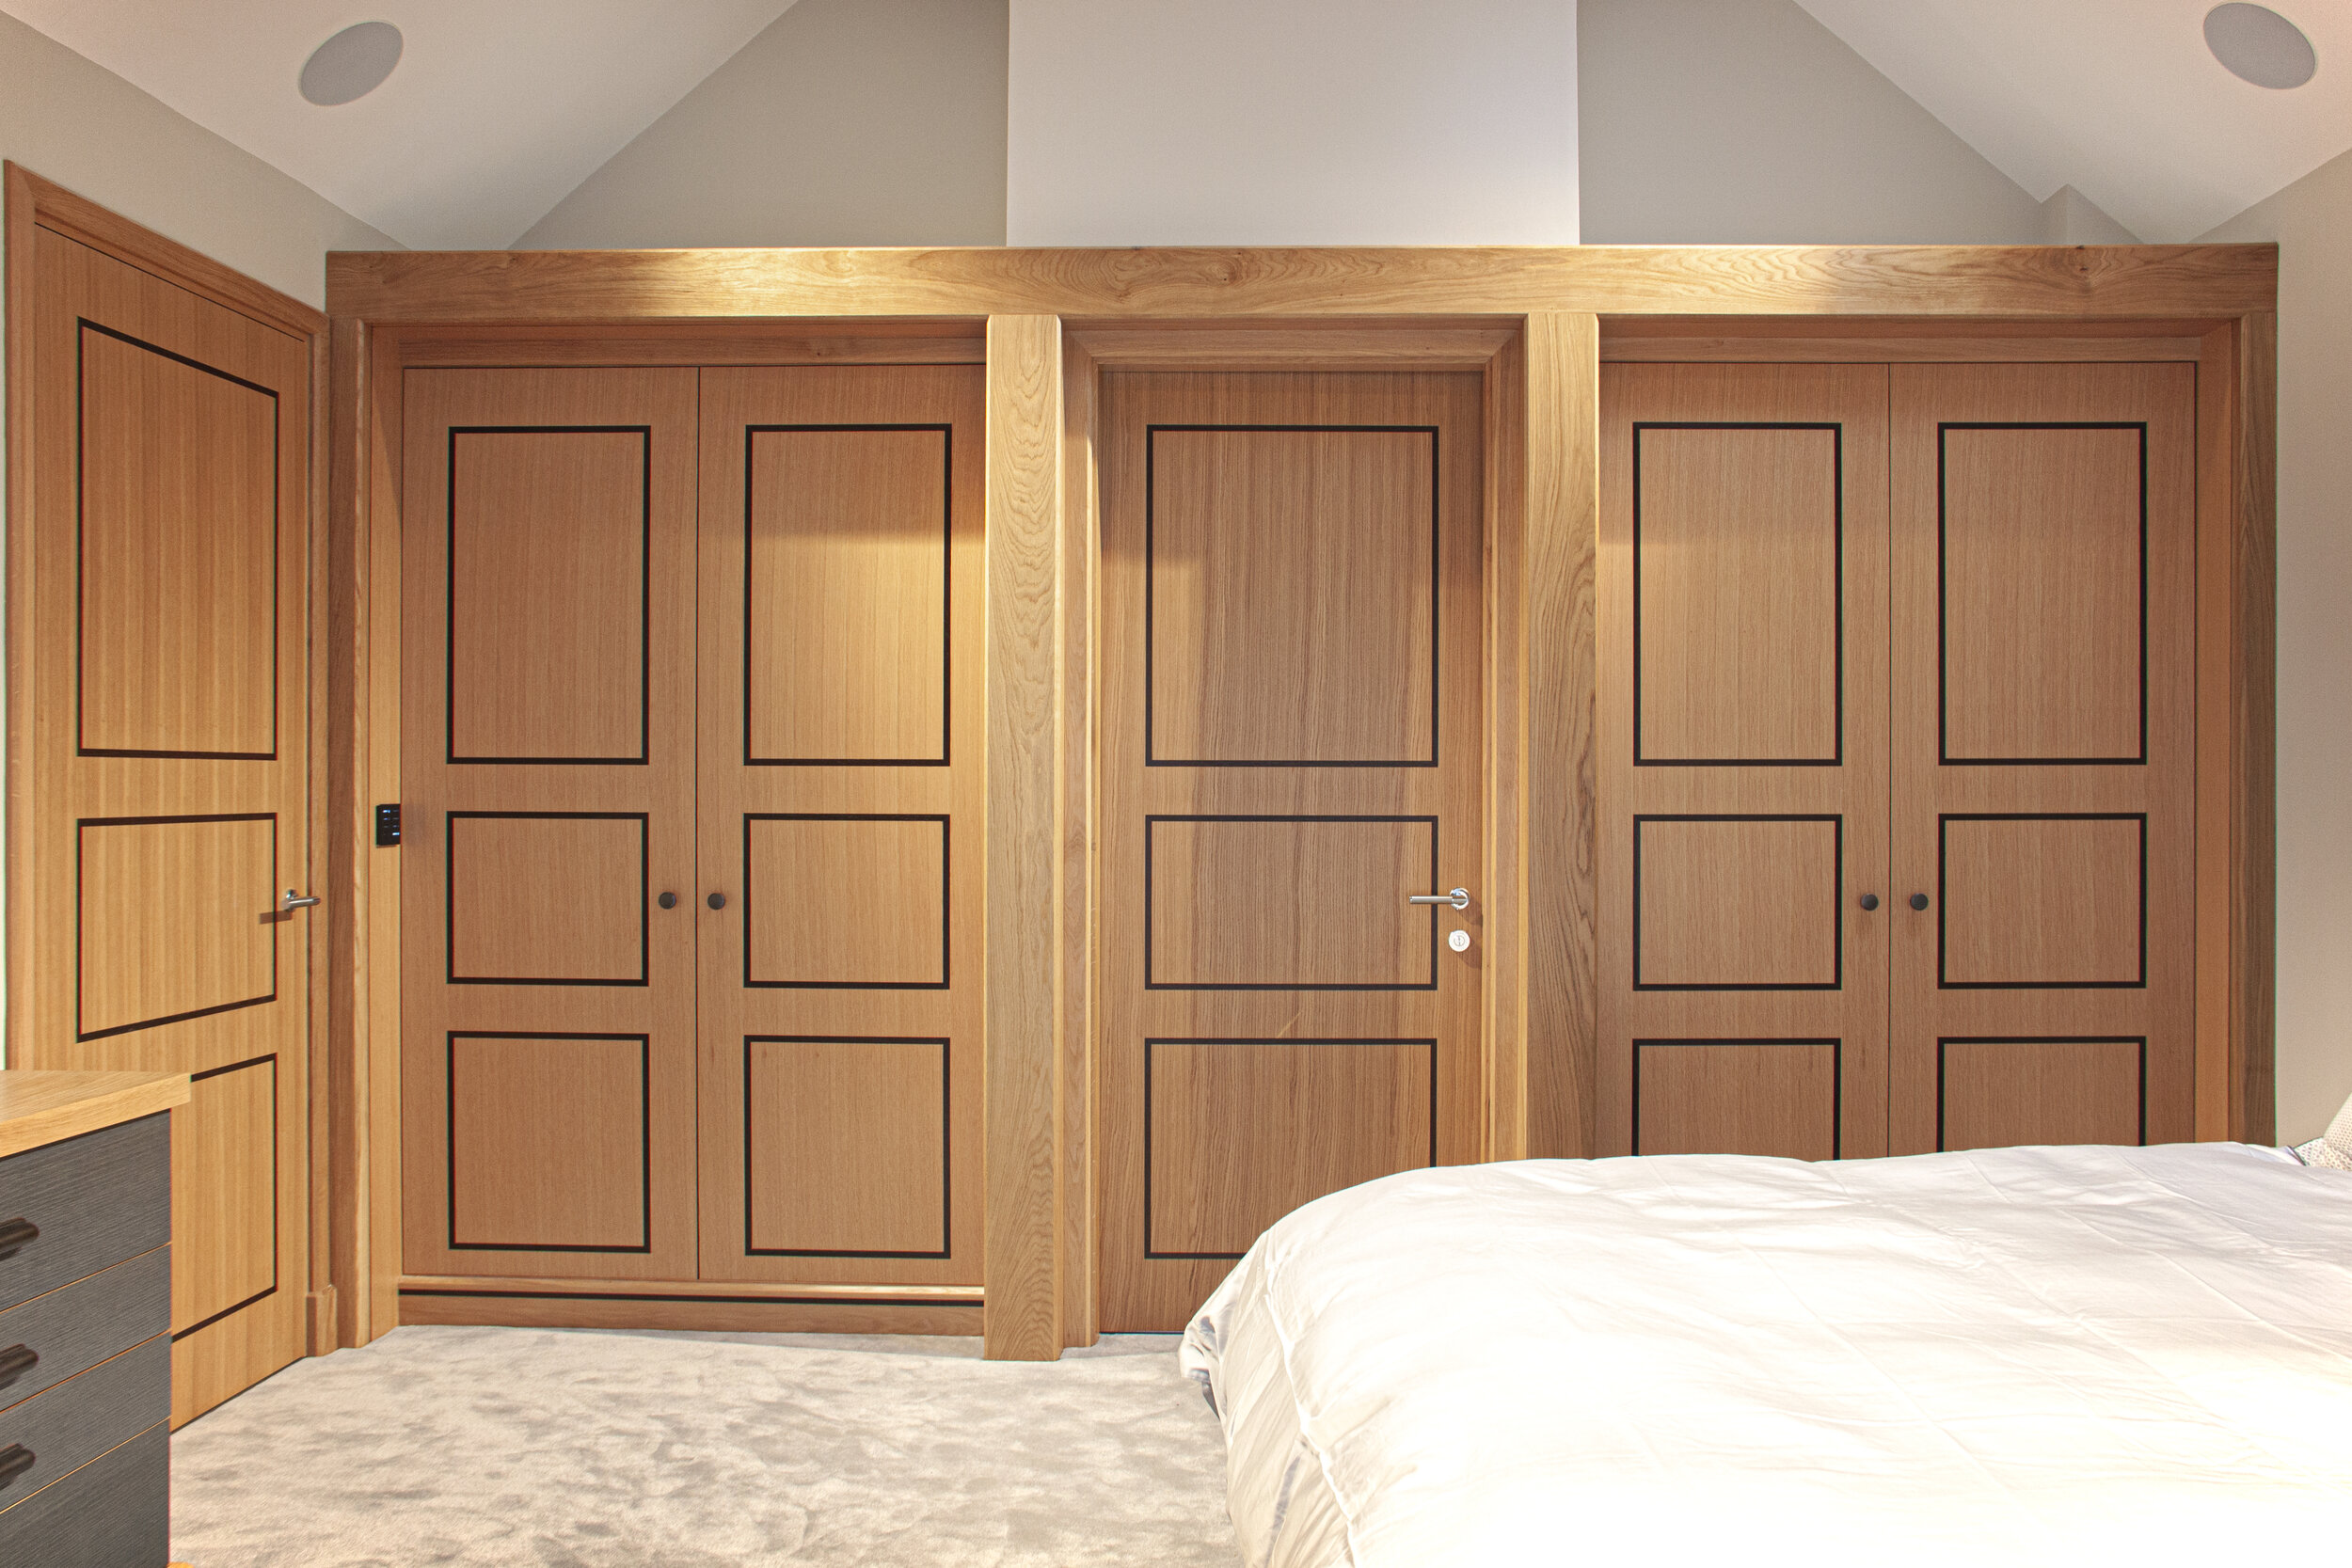 Birmingham Veneers - Private residential joinery, wardrobe doors, single doors, bespoke doors with inlays